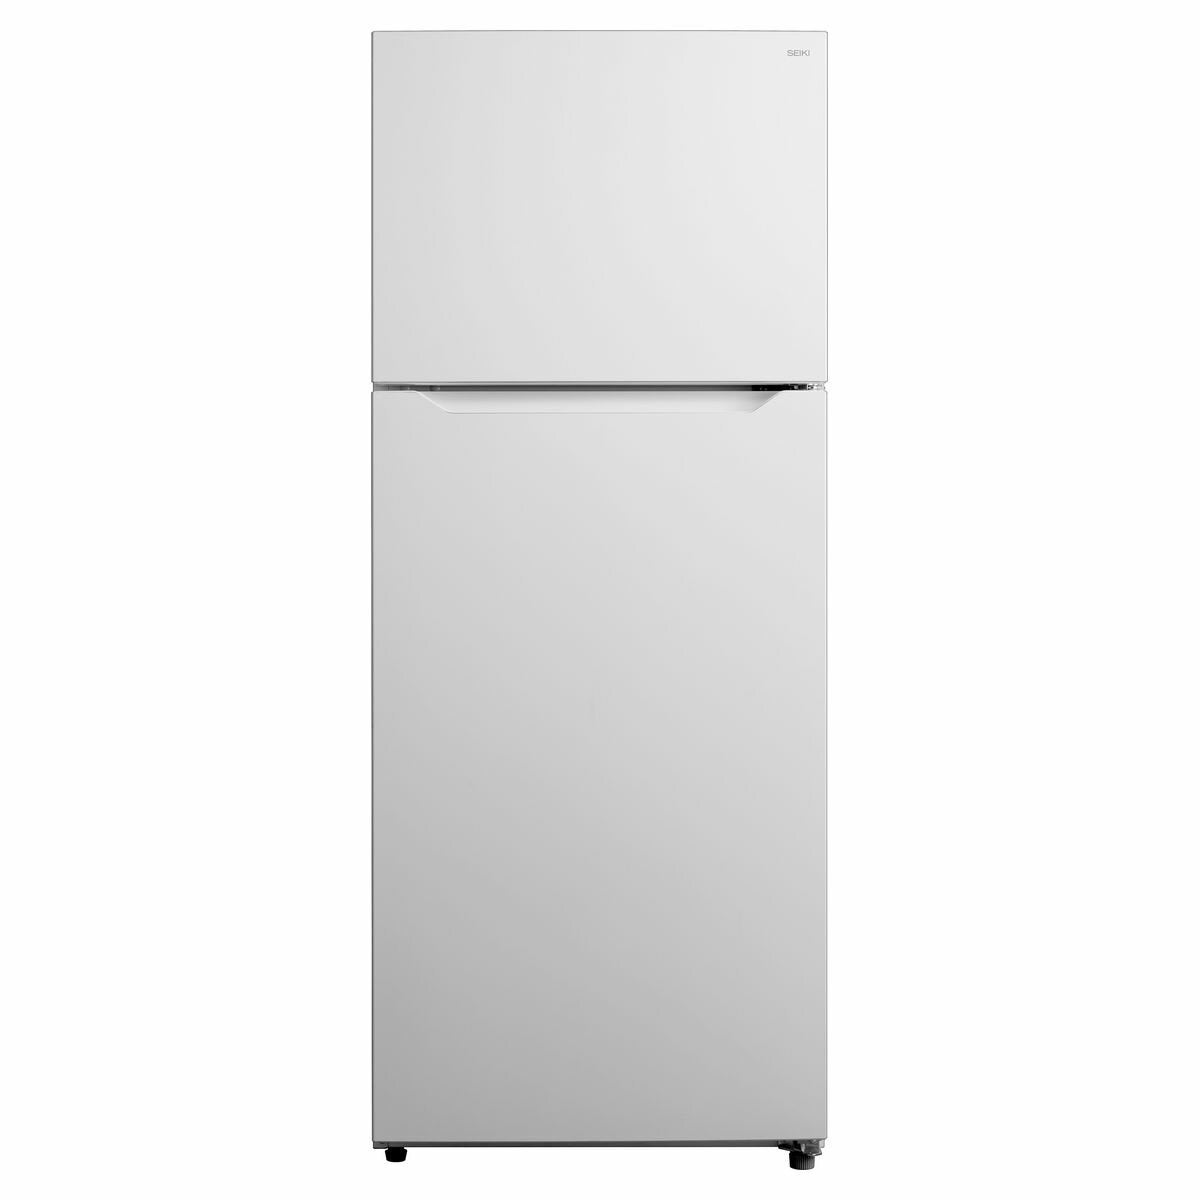 Seiki SC-430AU8TM Refrigerator